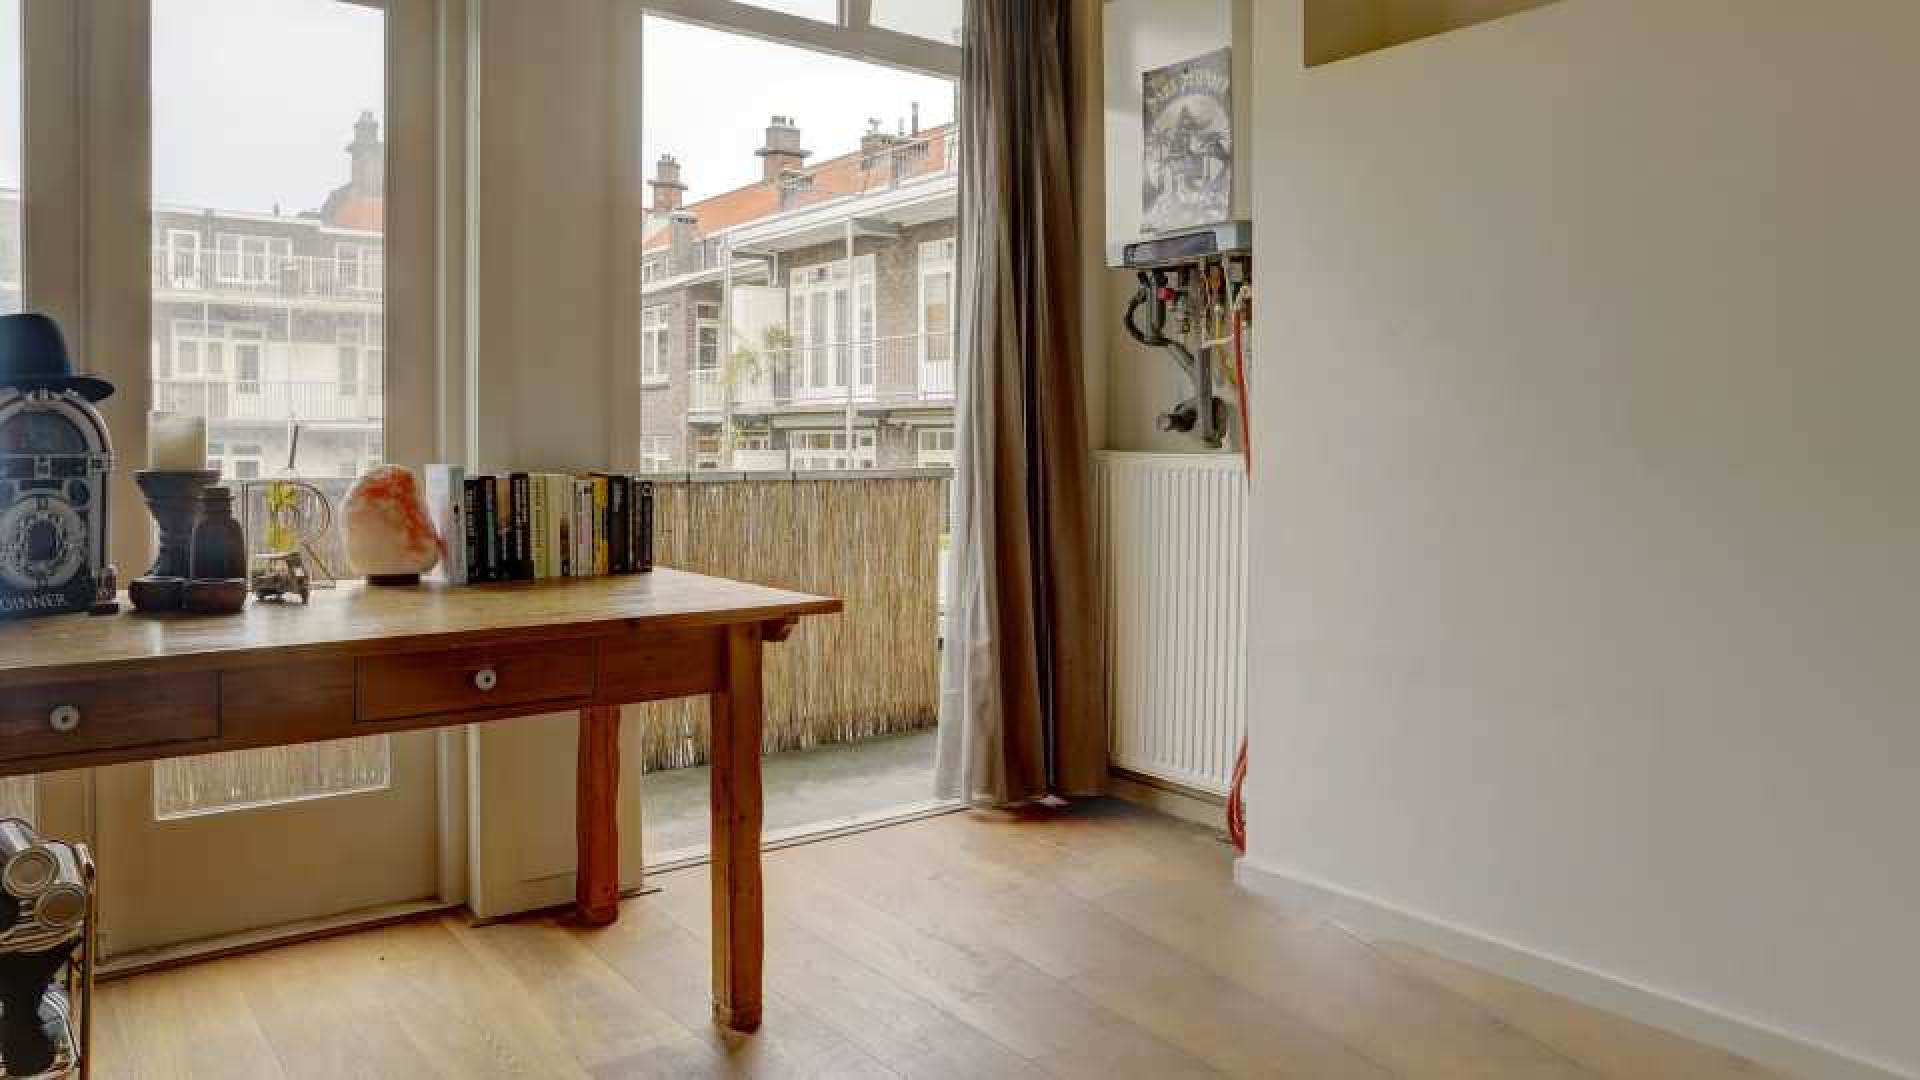 Rick Brandsteder zoekt huurder voor zijn Amsterdamse appartement. Zie foto's